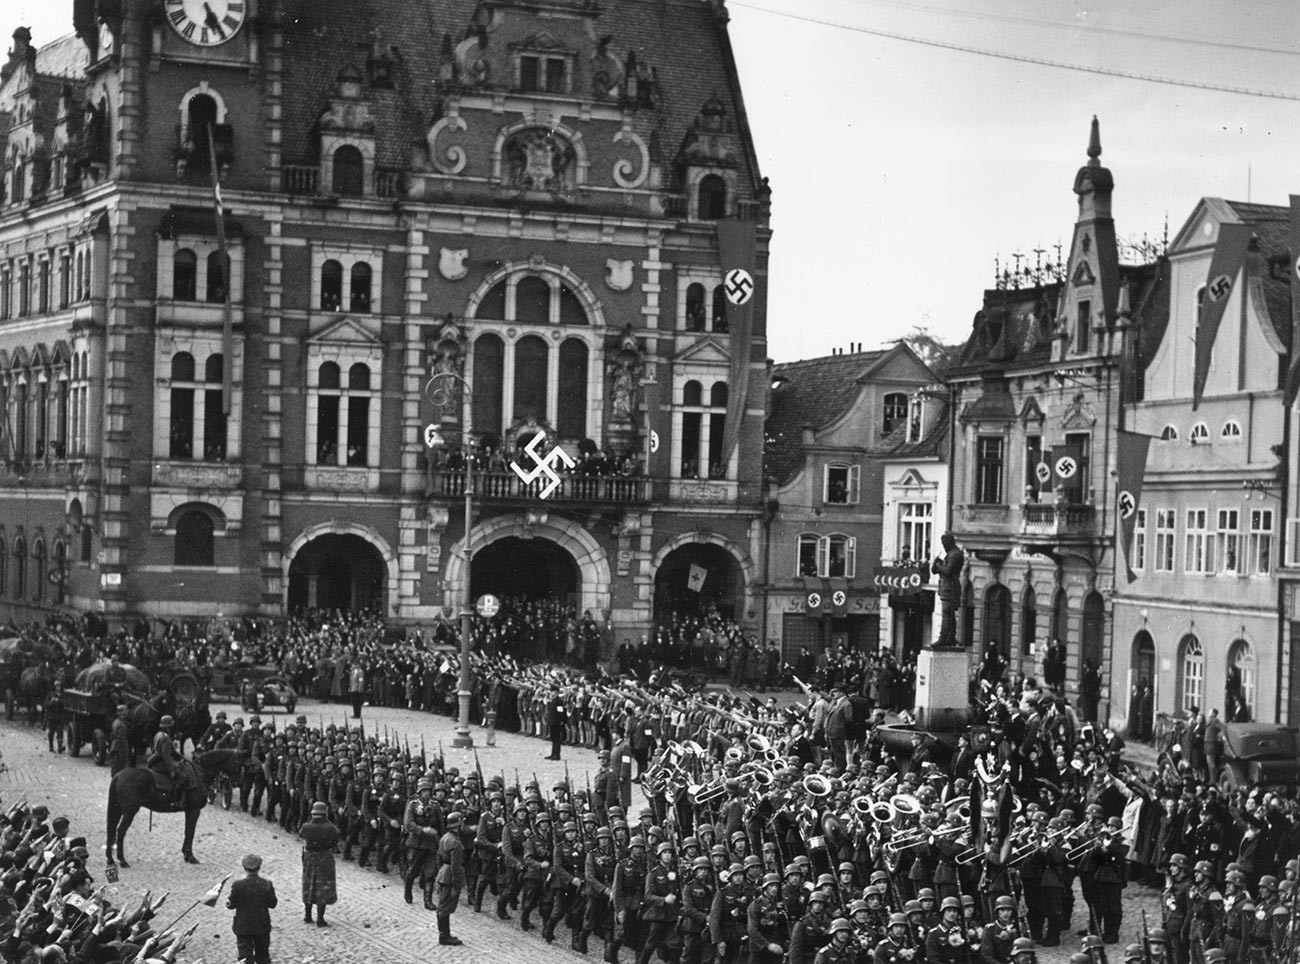 Las tropas del ejército alemán entran en territorio checoslovaco y desfilan en la plaza de la ciudad de Rumburk, que ha sido decorada con banderas con la cruz gamada.